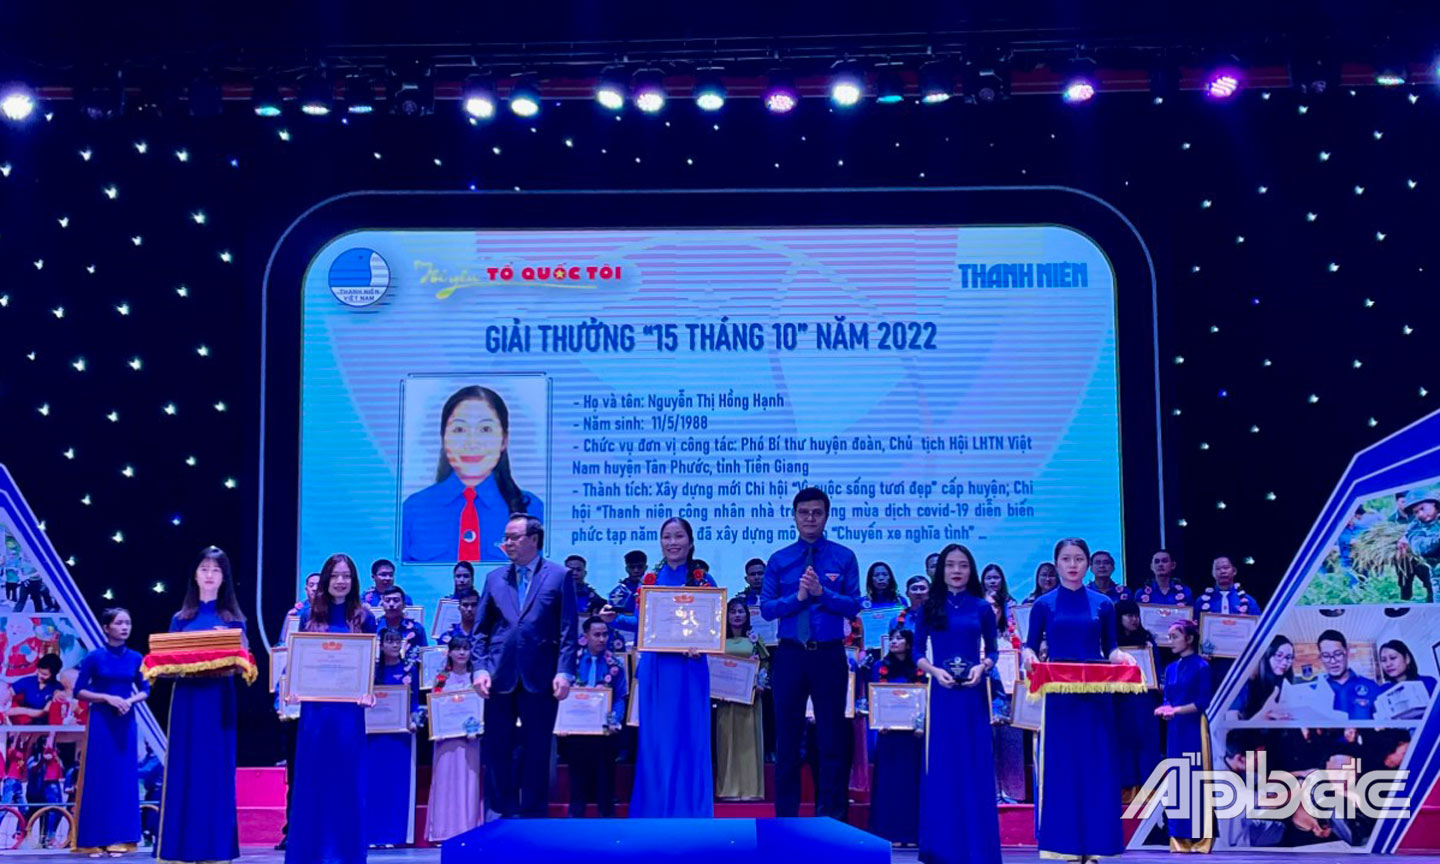 Chủ tịch Hội LHTN Việt Nam huyện Tân Phước Nguyễn Thị Hồng Hạnh  nhận Giải thưởng “15 tháng 10” năm 2022 do Hội LHTN Việt Nam trao tặng.